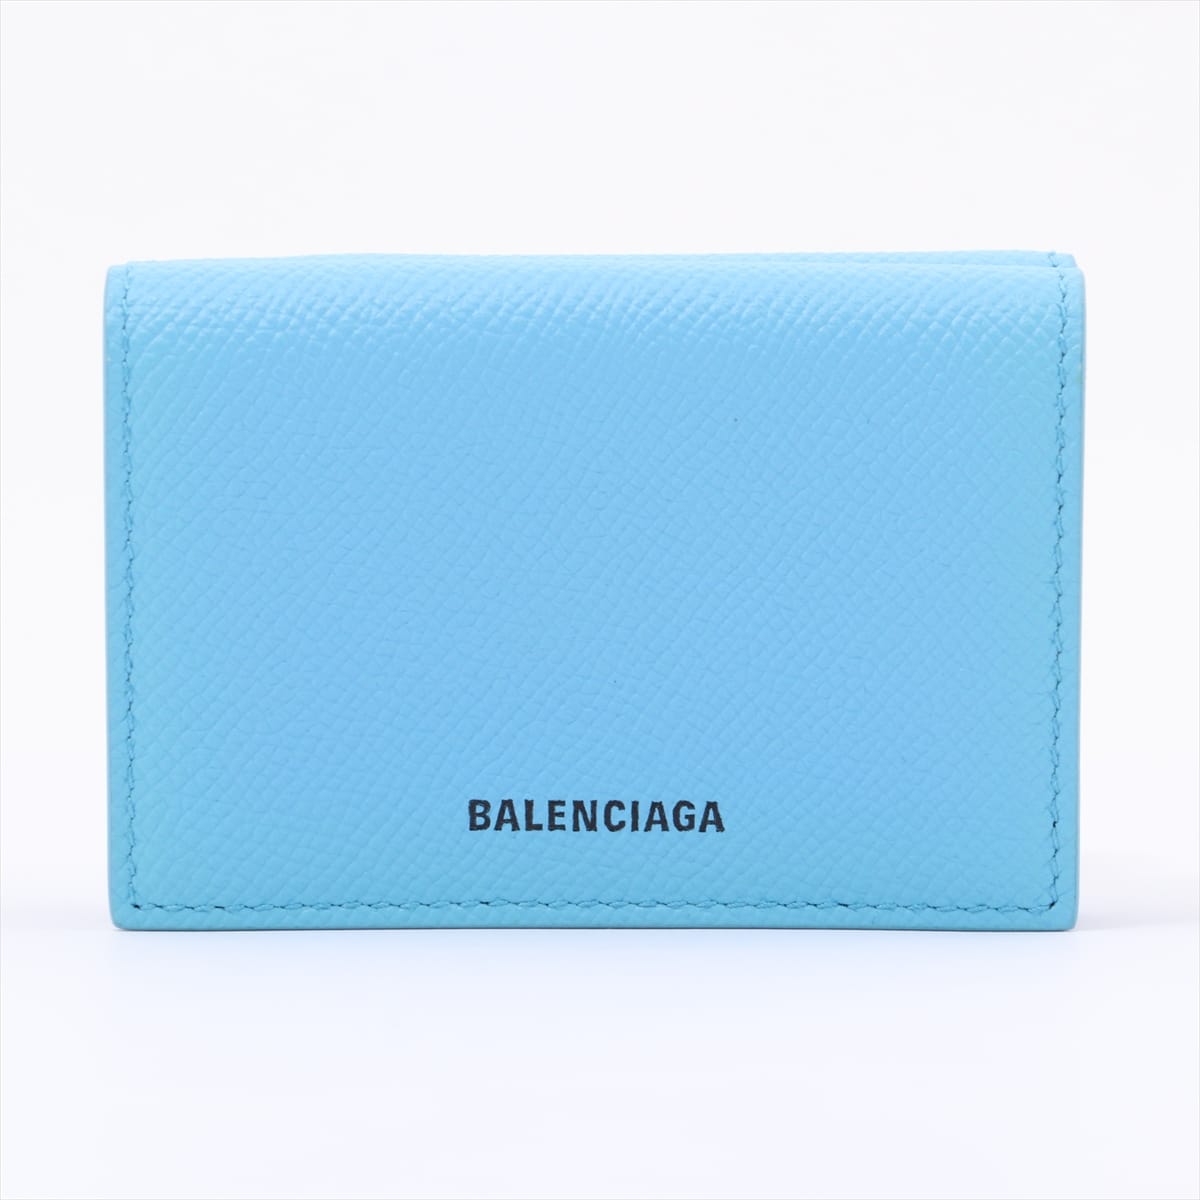 Balenciaga Ville 558208 Leather Wallet Blue